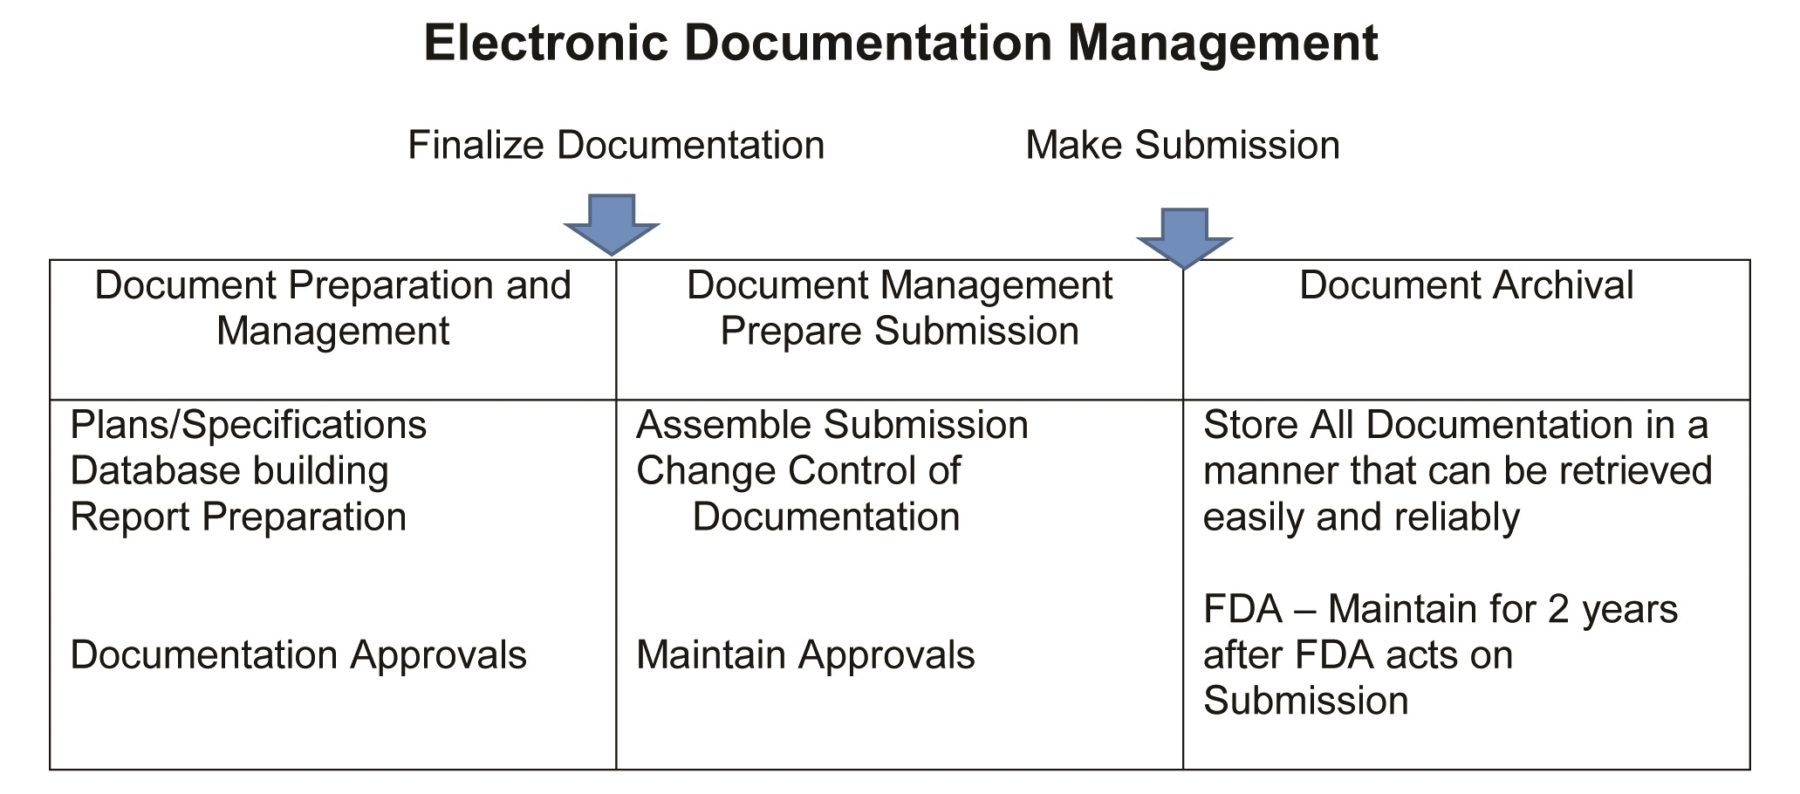 Electronic Documentation Management